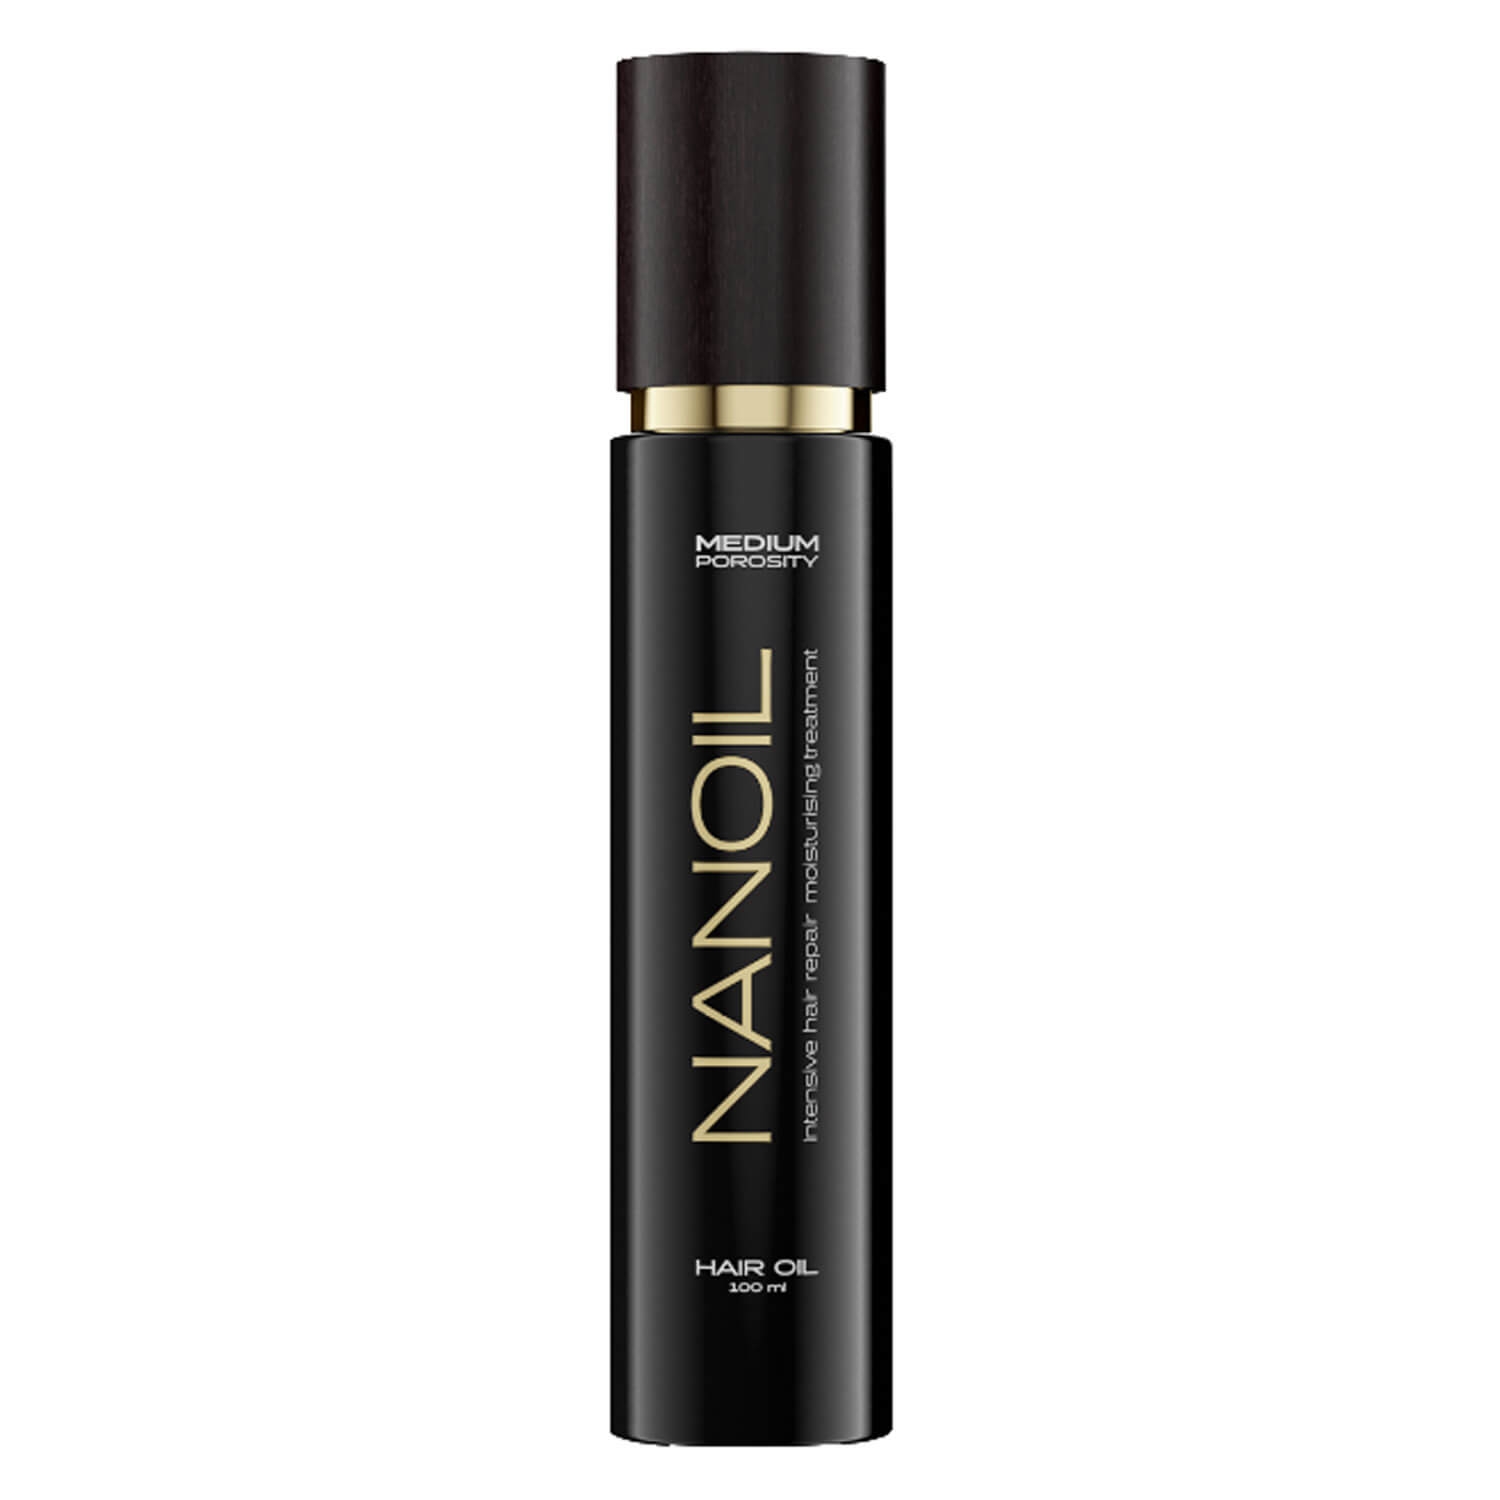 Produktbild von Nanoil - Medium Porosity Hair Oil